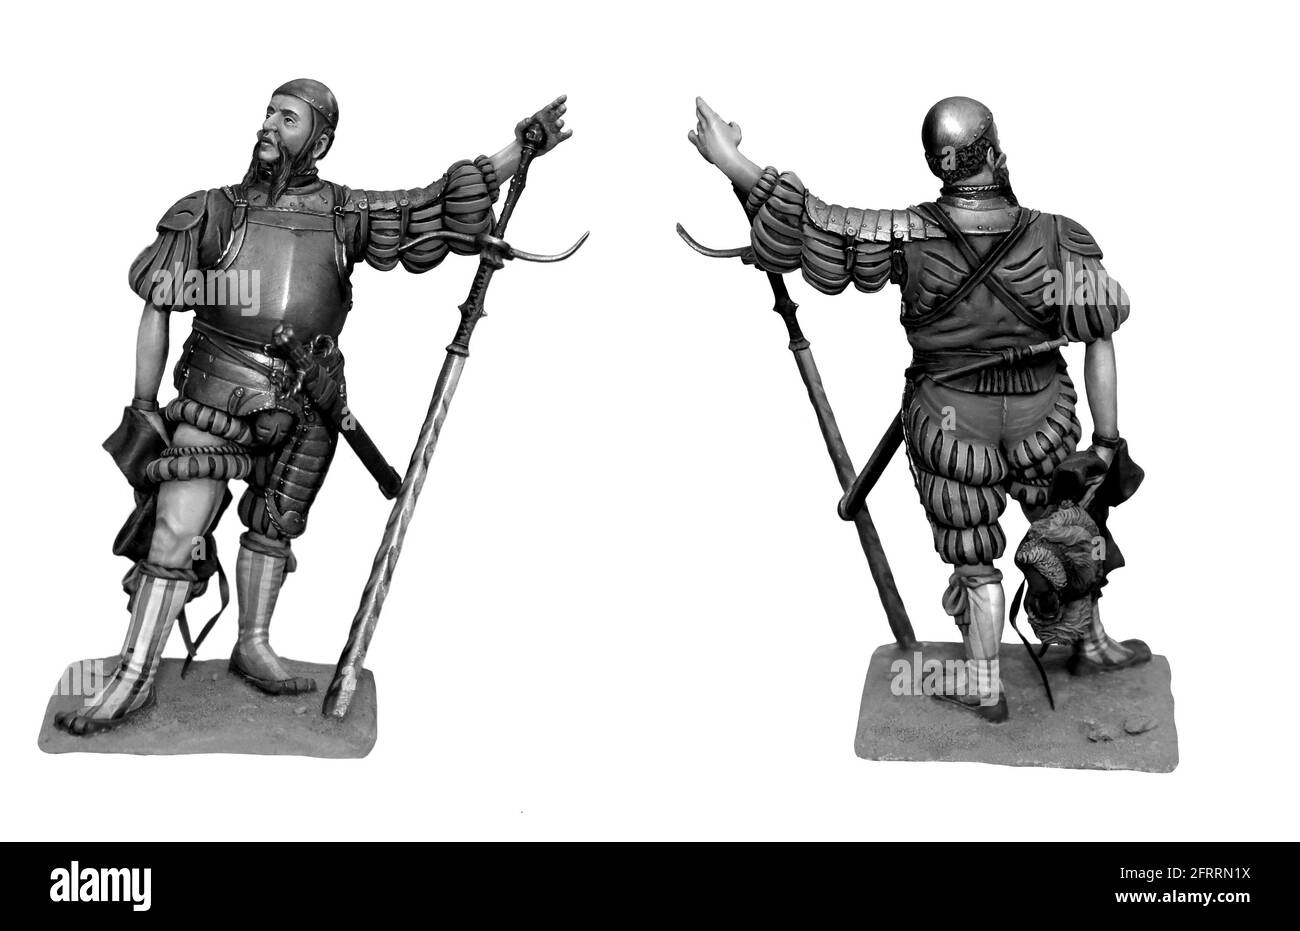 Landsknecht avec une épée longue. Illustration d'un soldat médiéval. Mercenaire médiéval. Banque D'Images